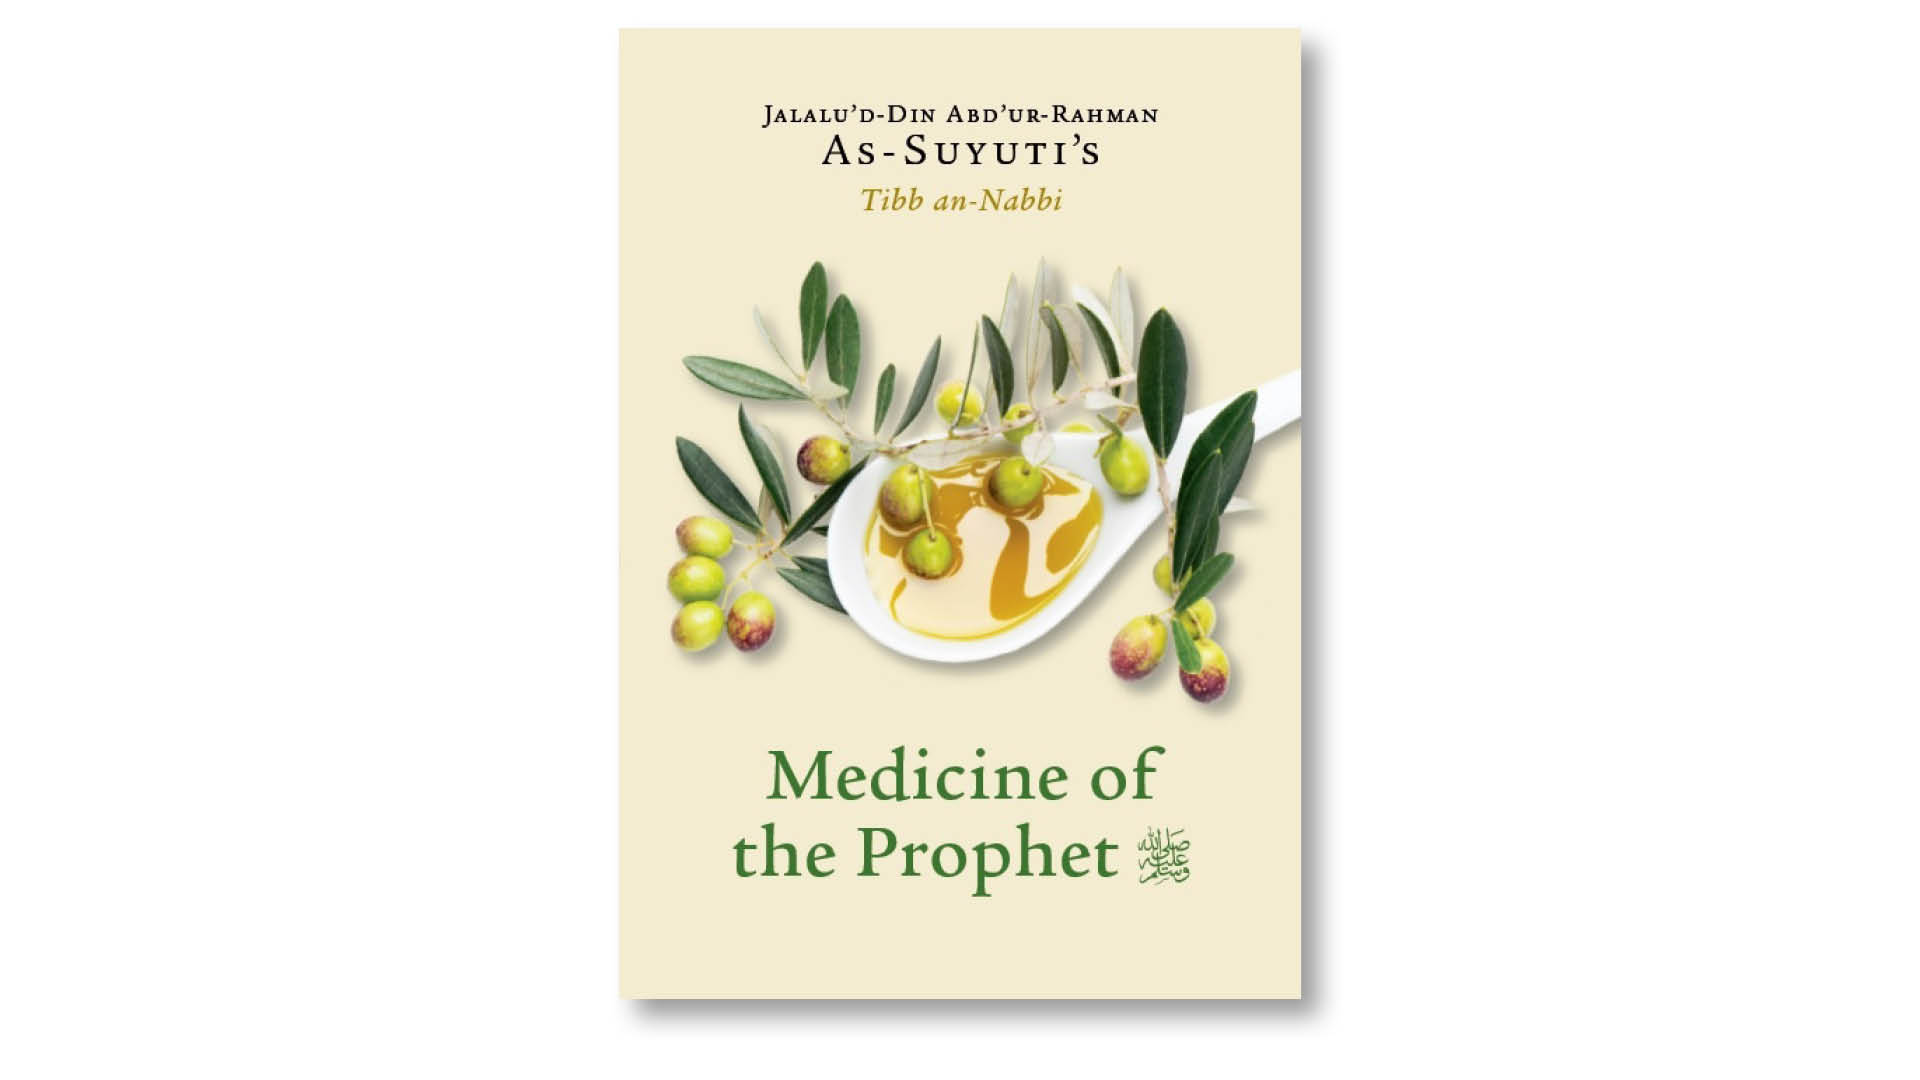 Medicine of the Prophet